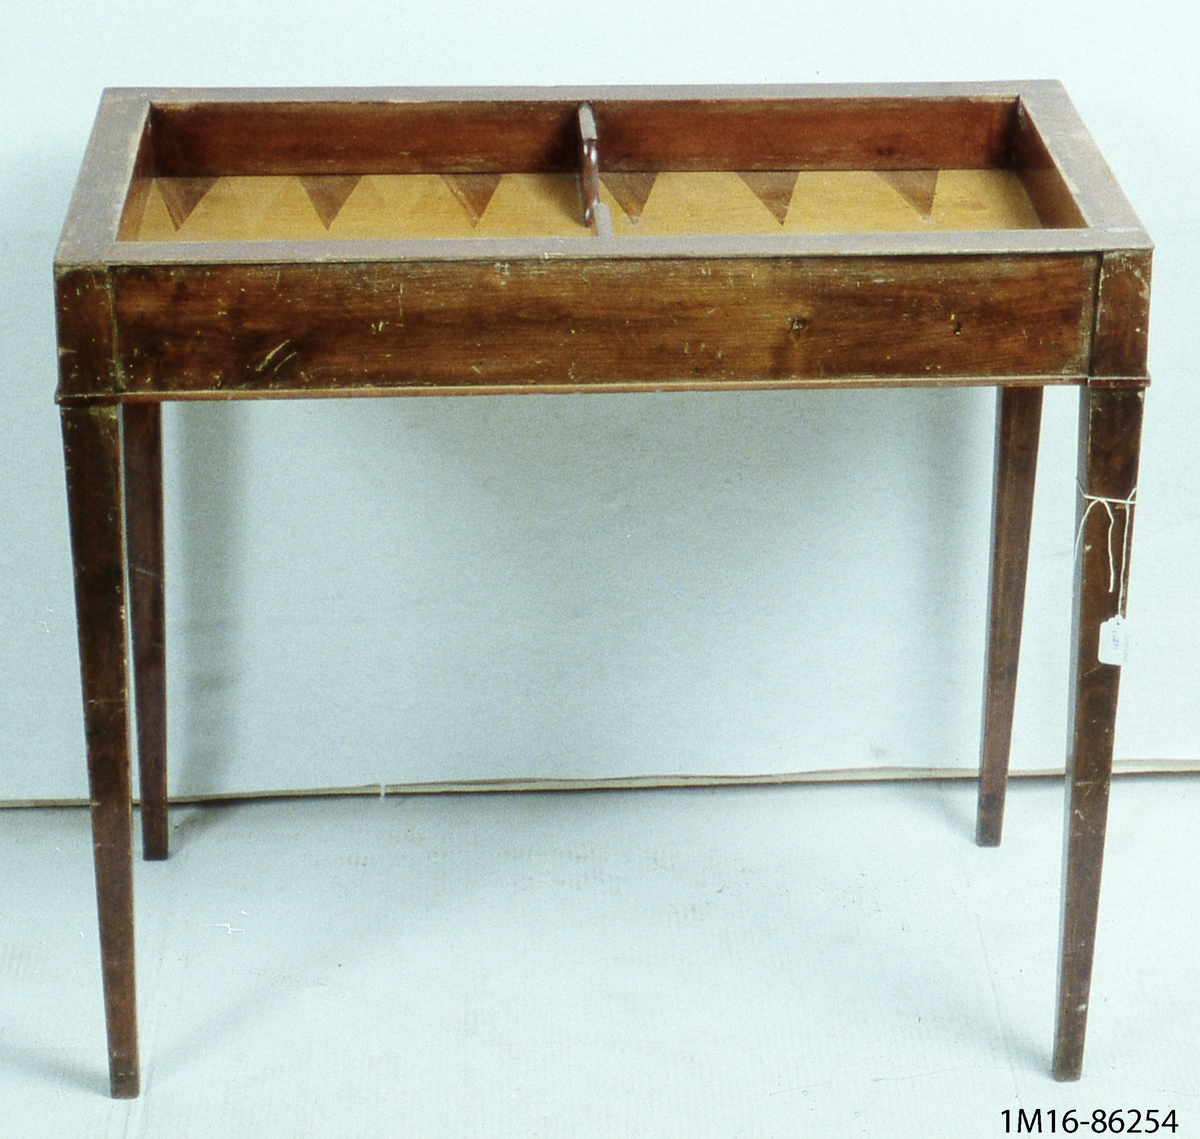 Spelbord, av mahogny, två hopfällbara skivor, raka ben. På ena skivan inlagda rutor för  schackspel och brickor.